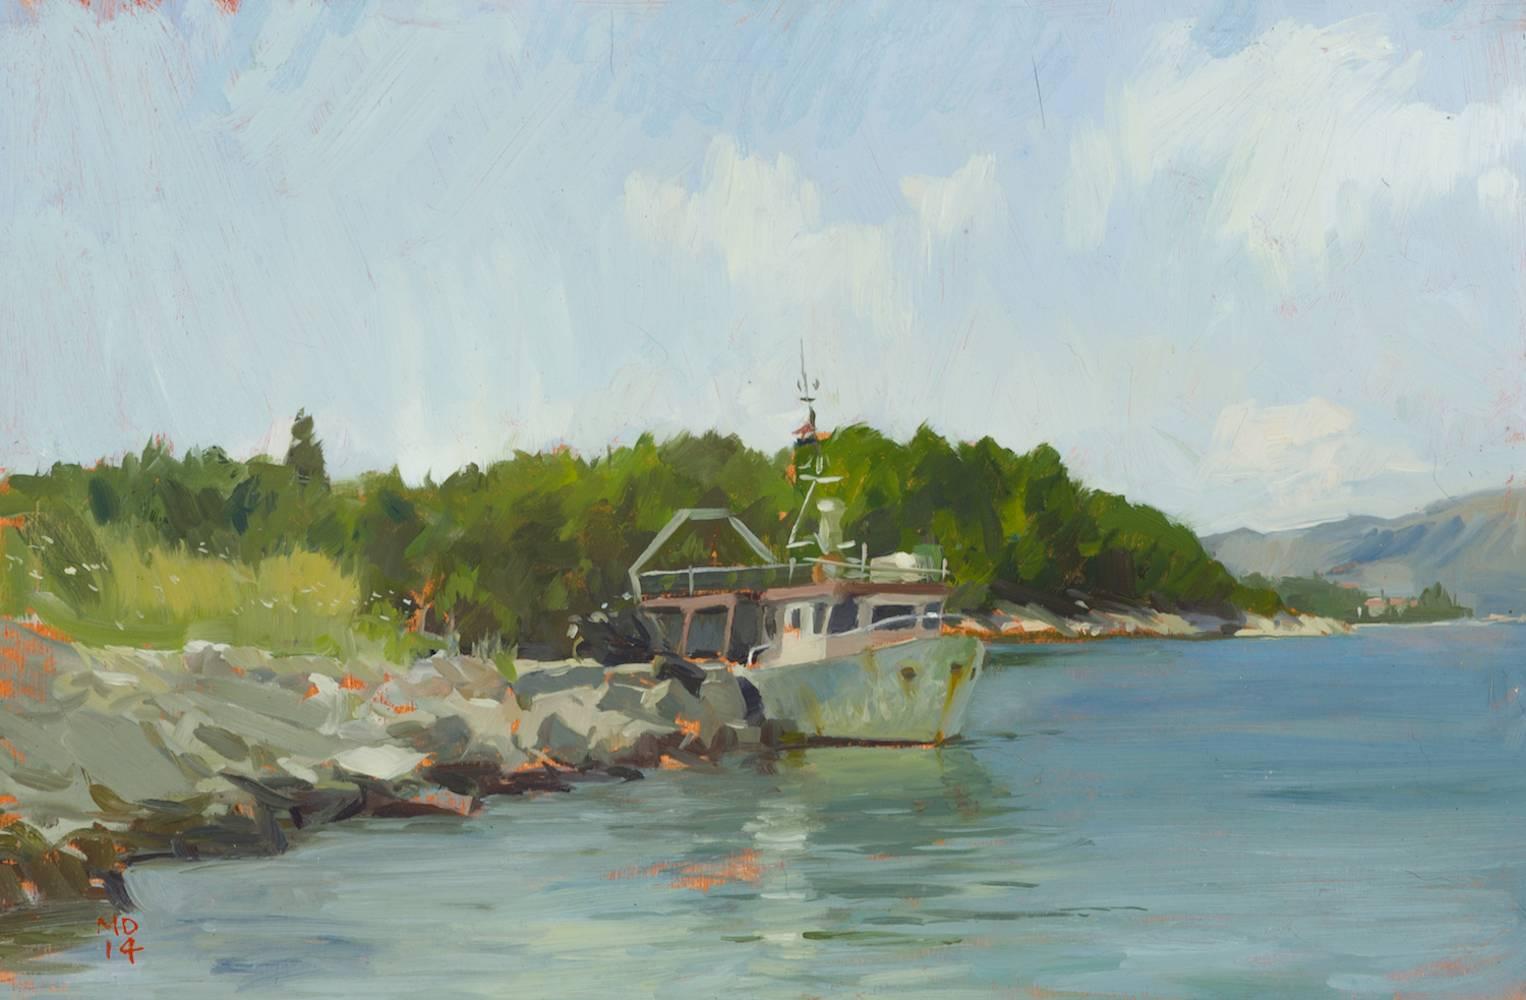 Marc Dalessio Landscape Painting – "Korcula Fischerboot" zeitgenössische Pleinairmalerei, blau, grün, Uferlinie